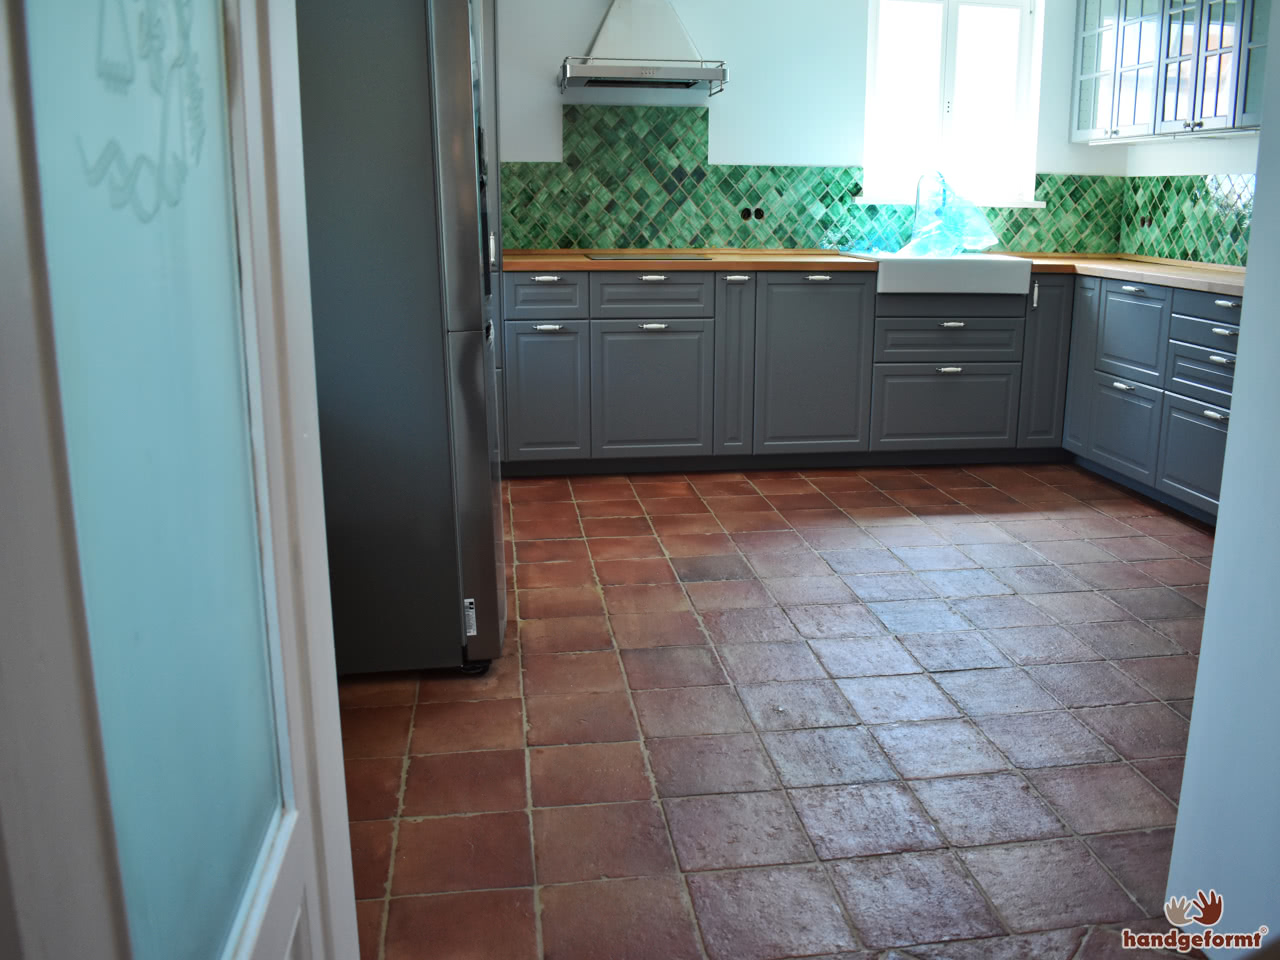 Die Küche kurz vor ihrer Fertigstellung. Grüne Wandfliesen und Bodenfliesen aus Terracotta ergänzen sich gut.